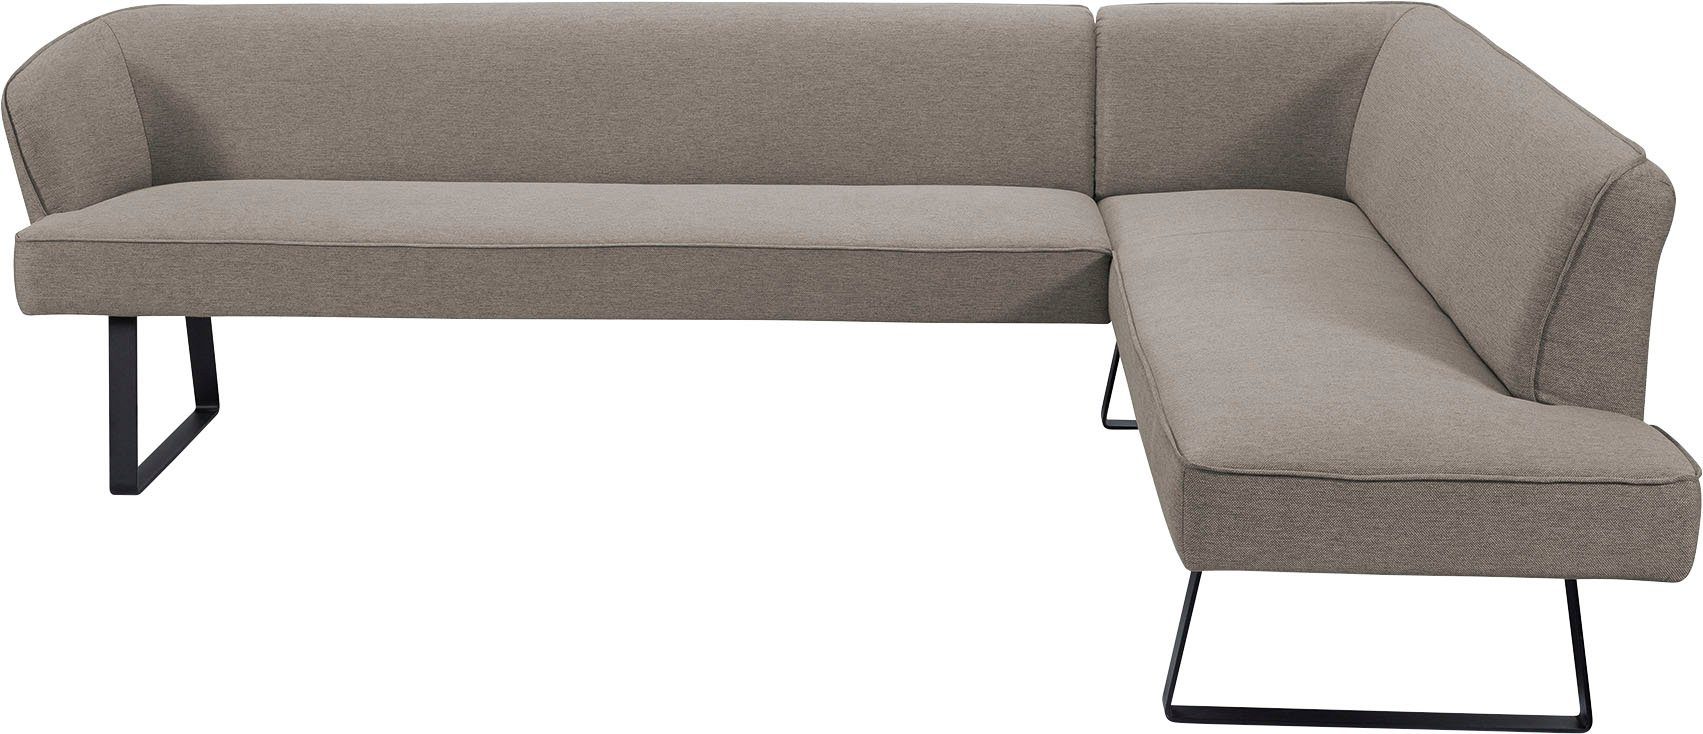 exxpo - sofa verschiedenen Bezug Americano, mit Metallfüßen, fashion Qualitäten in Eckbank und Keder